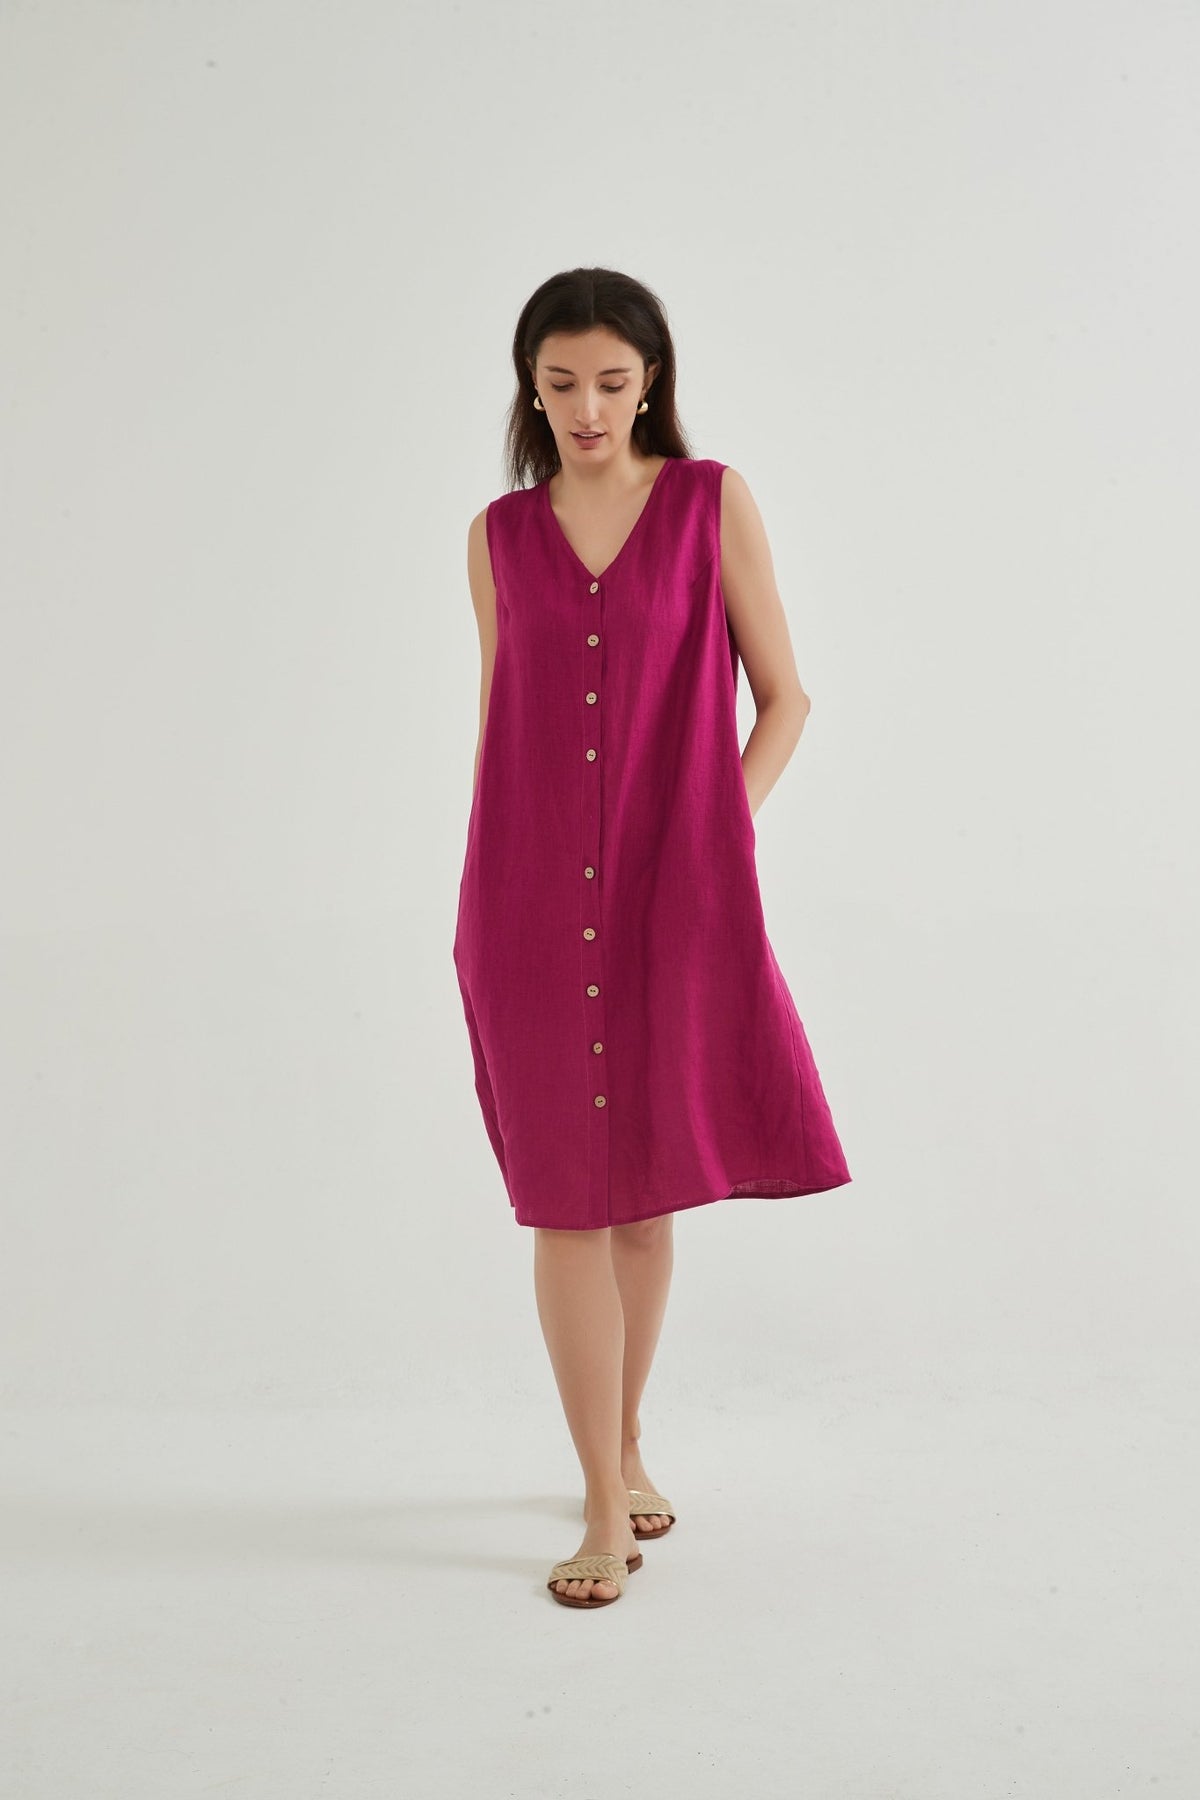 Pre-Order Rio 100% Linen Sleeveless Dress - Whisper Mint